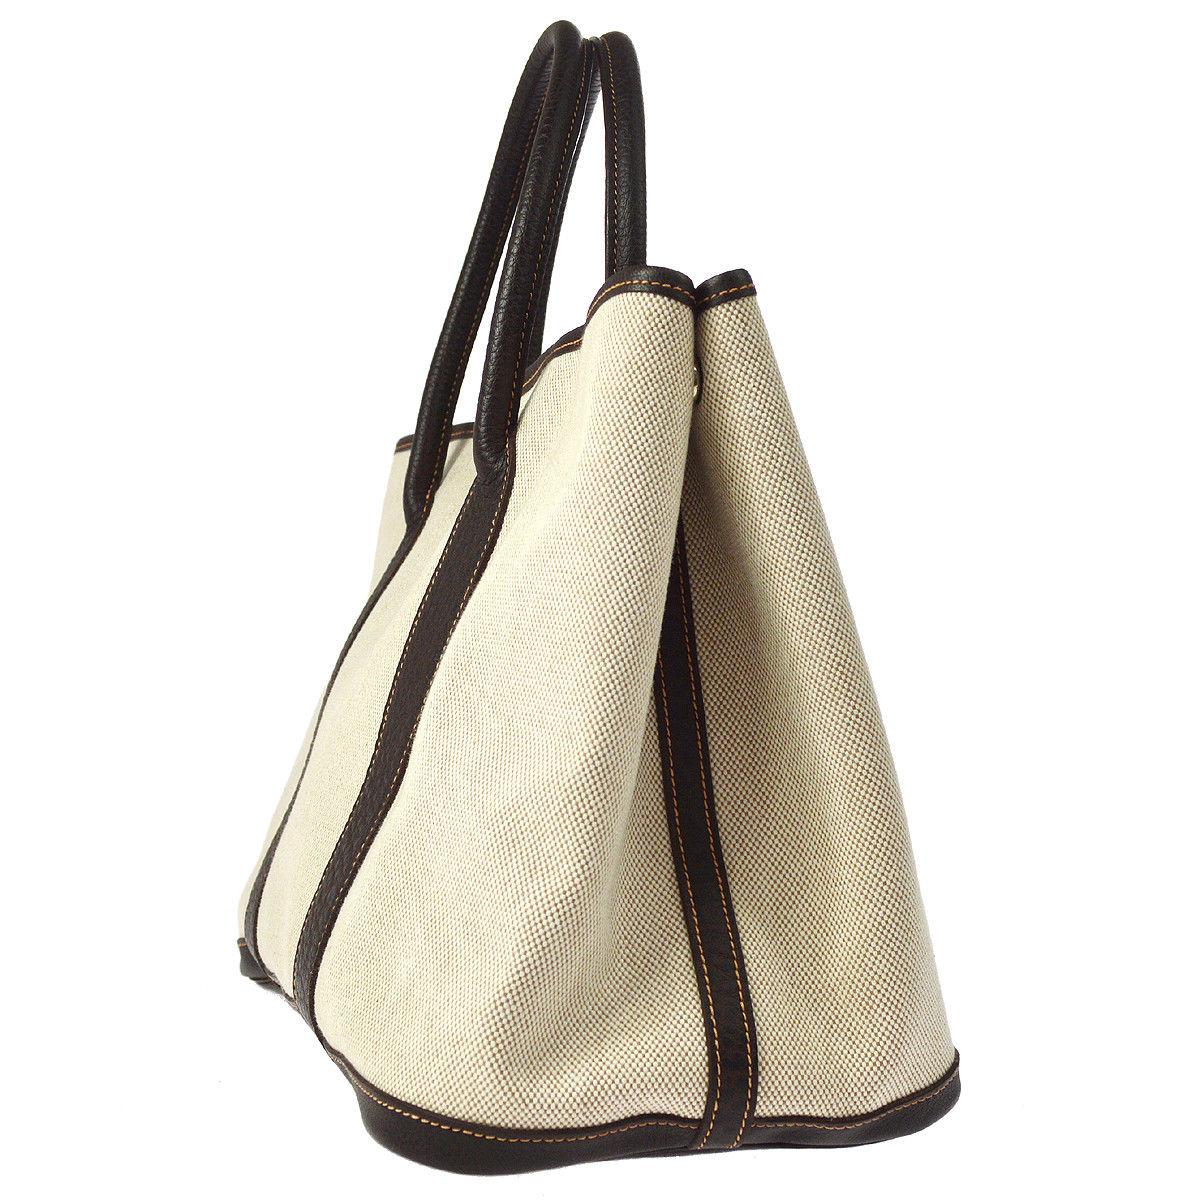 Beige Hermes Tan Canvas Dark Brown Leather Top Handle Travel Carryall Tote Bag